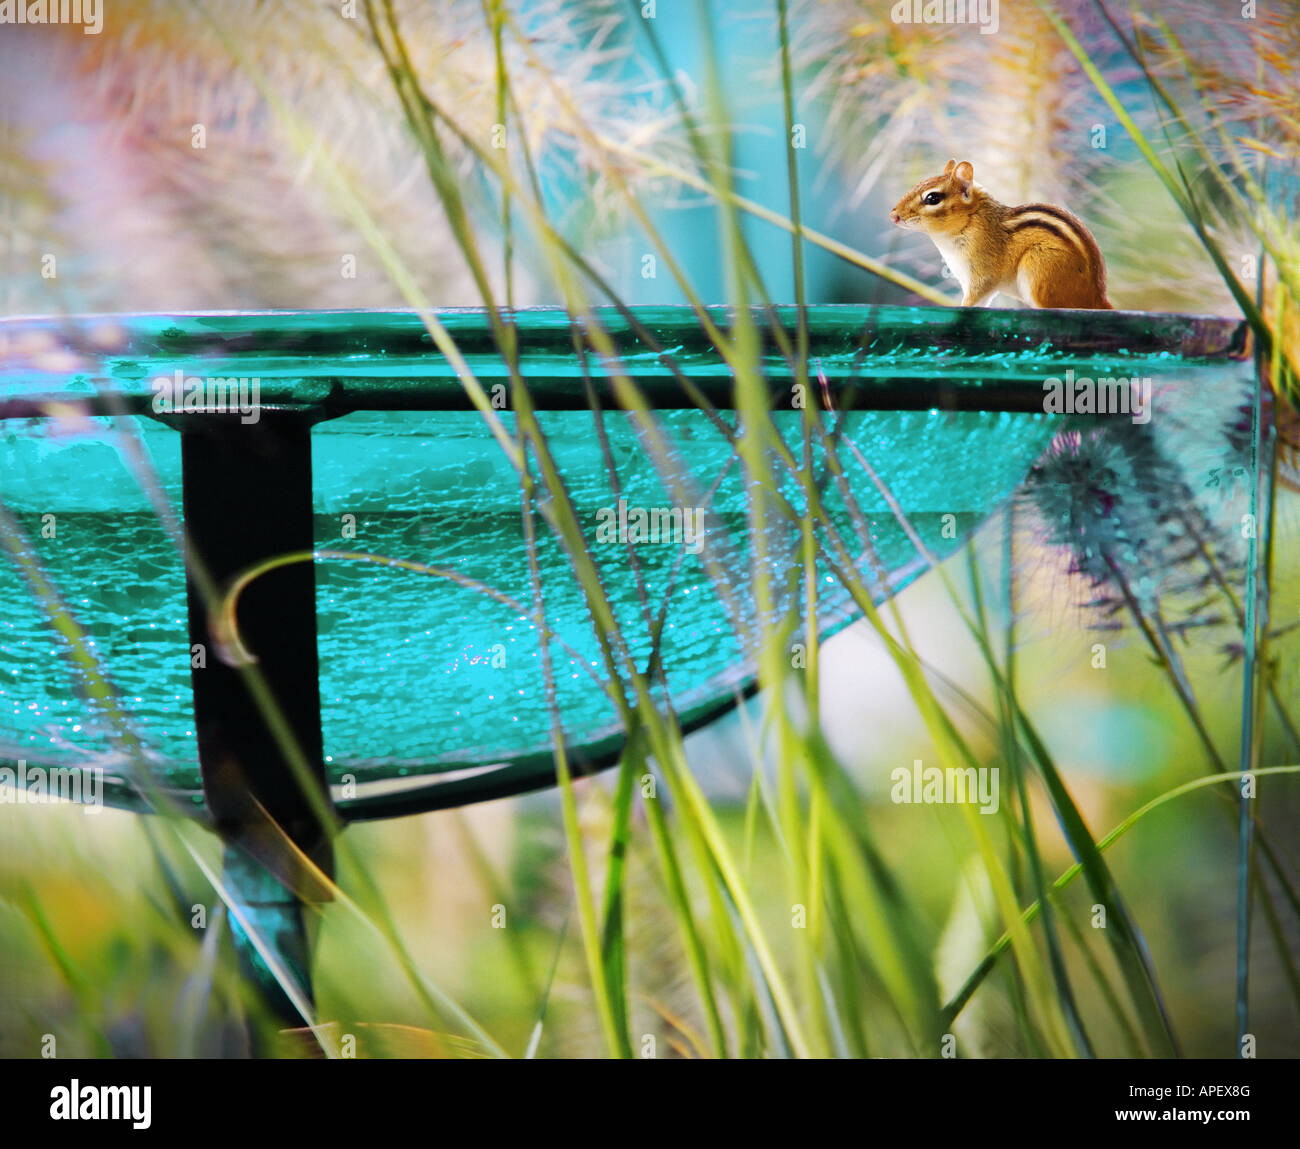 Pygmäen Eichhörnchen sitzend am Rand des Glas Garten Vogelhäuschen, umgeben durch hohe Gräser. Stockfoto